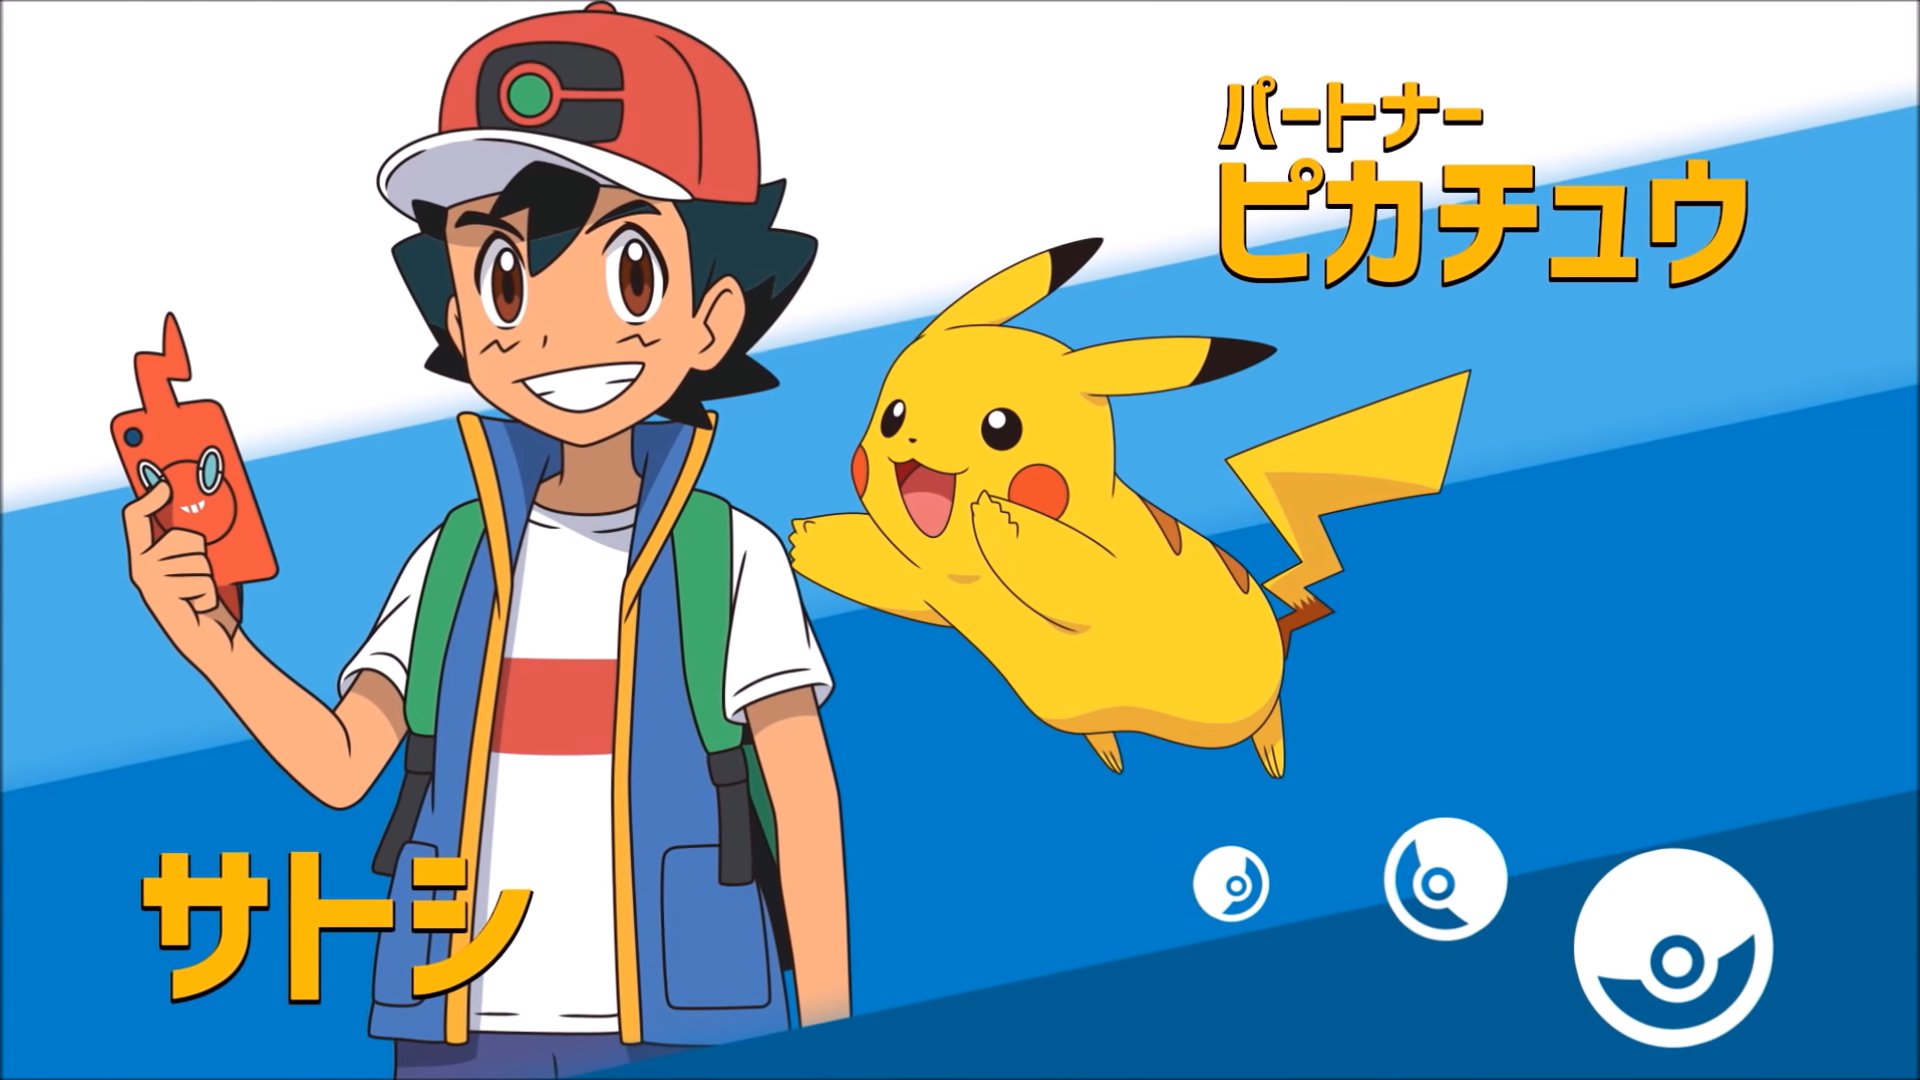 Deux Nouveaux Personnages Devoiles Dans La Nouvelle Serie Animee Pokemon Divers Nintendo Master